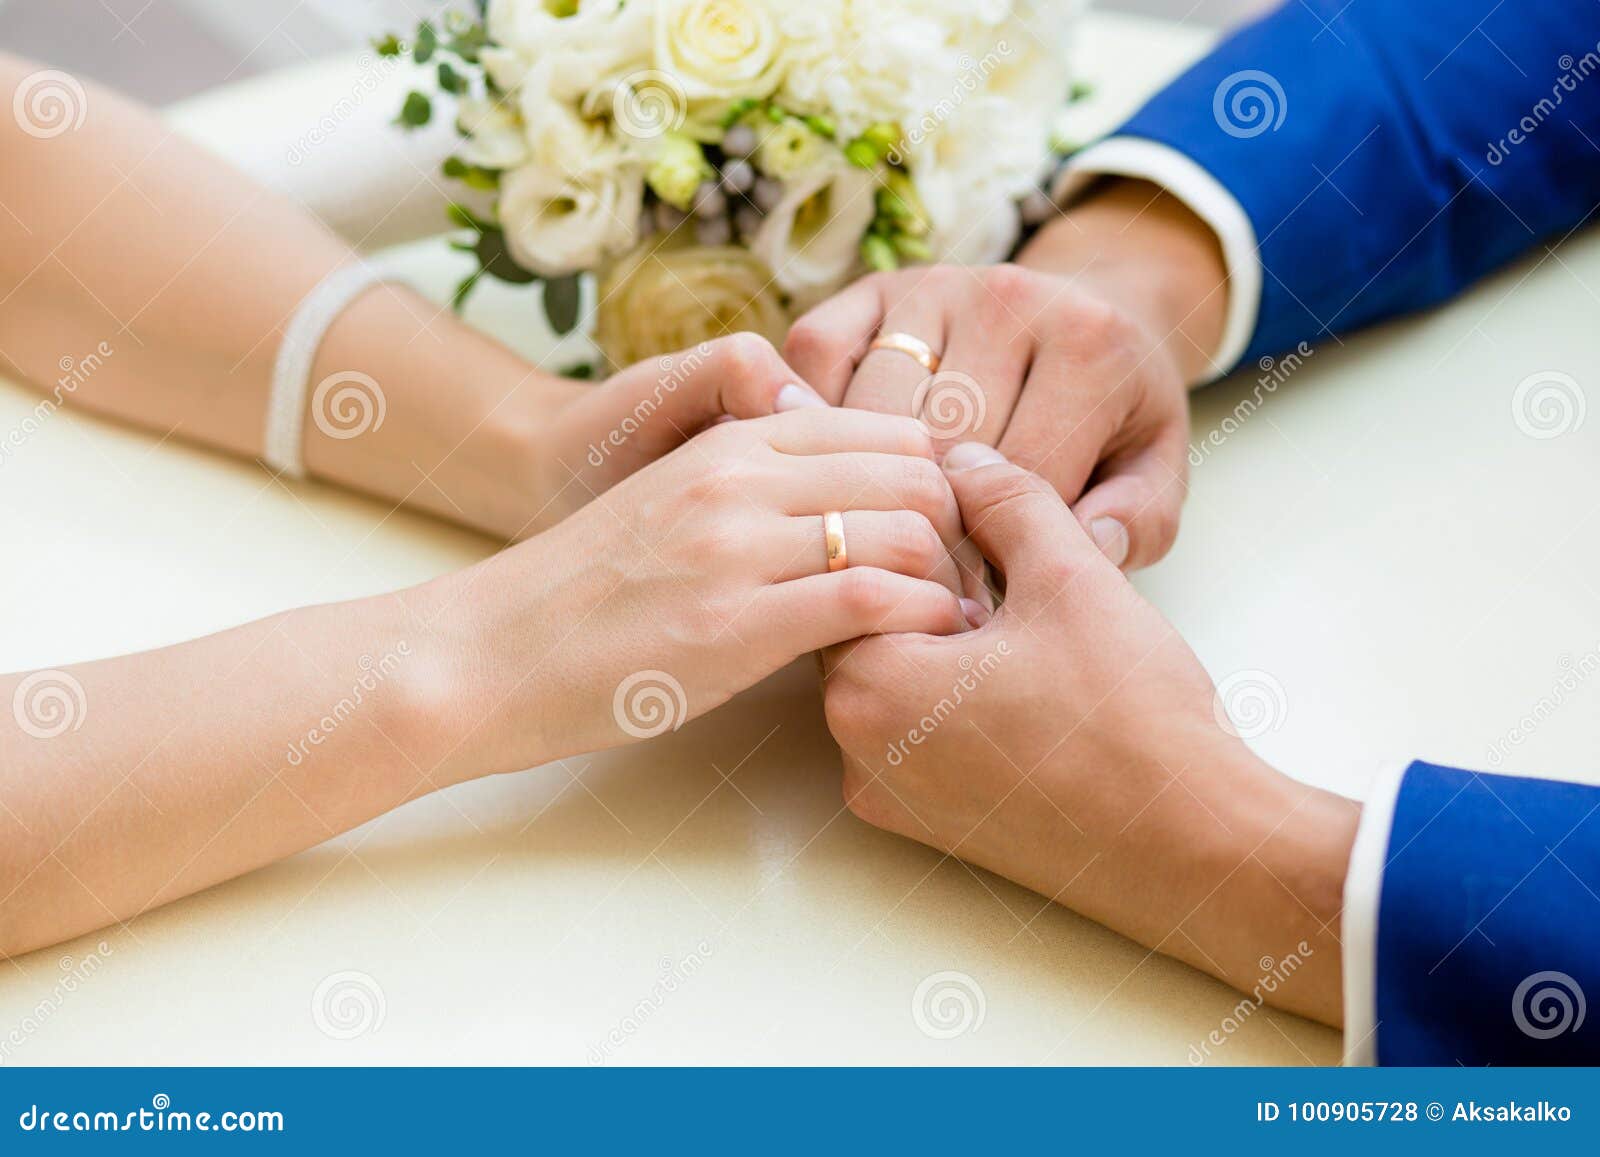 Супружество рк. Обручальные кольца на руках. Обручальные кольца и свидетельство о браке. Бракосочетание лентой руки. Свидетельство о браке руки с кольцами.